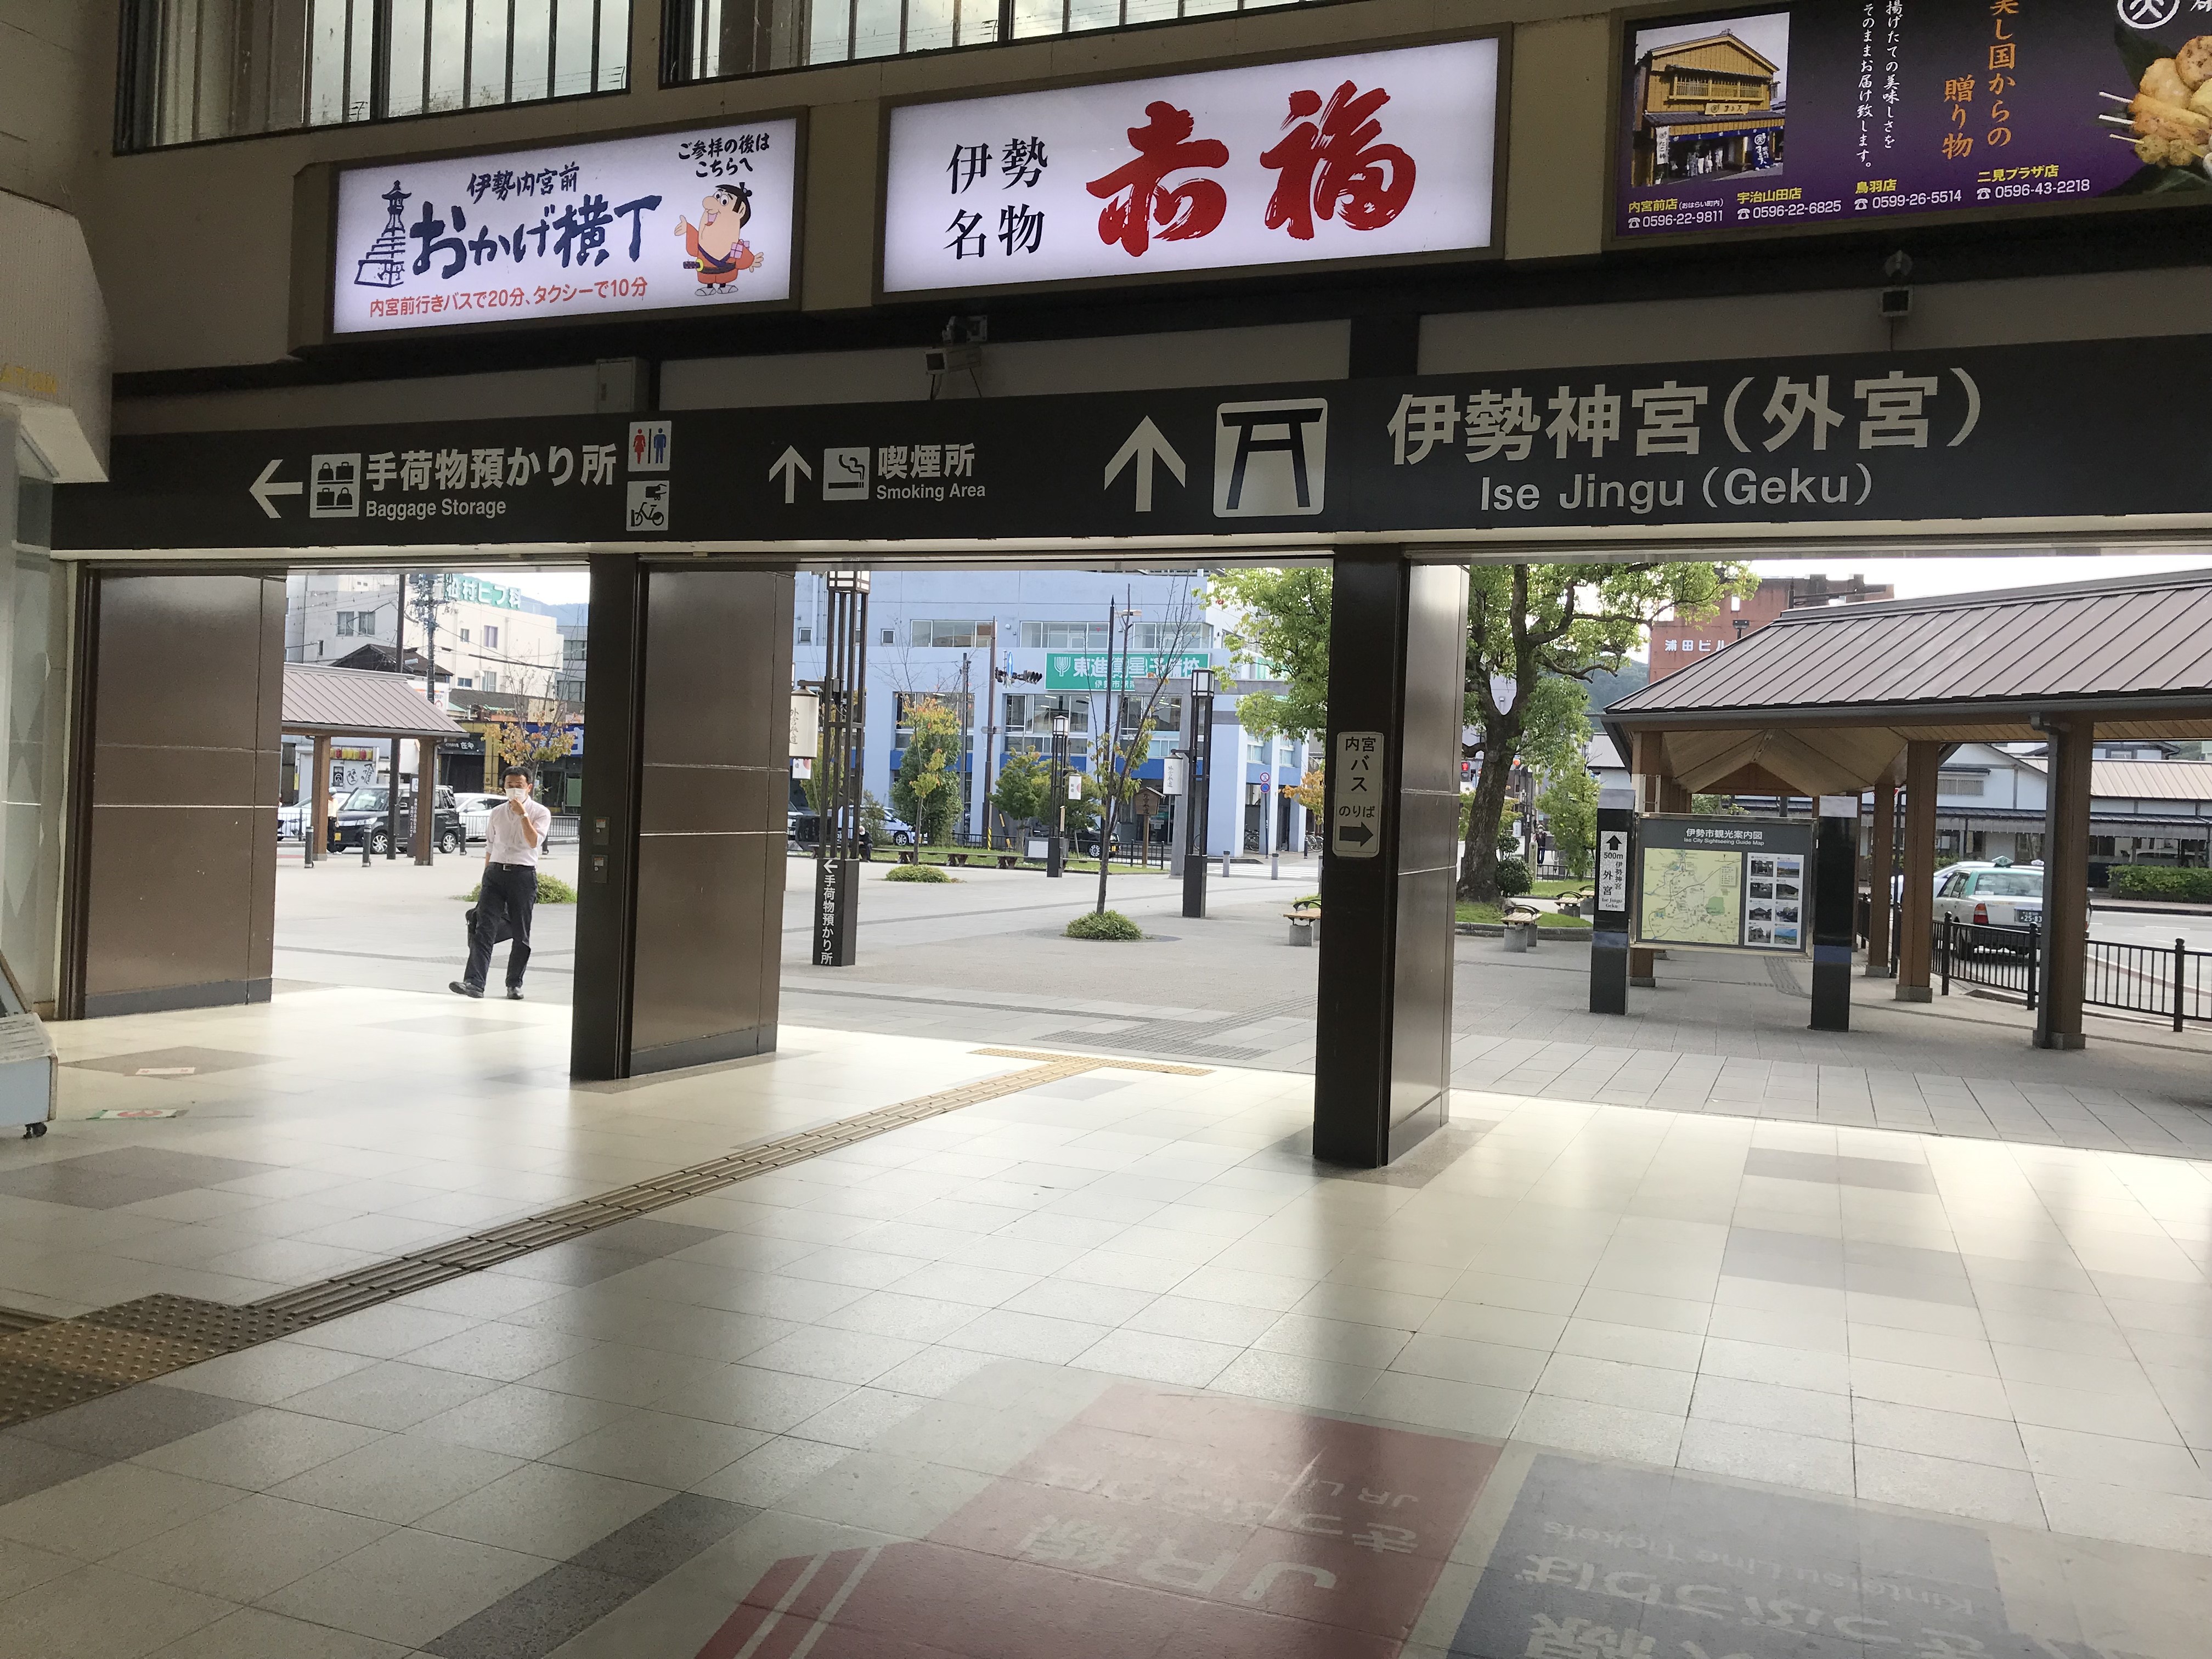 伊勢市駅は近鉄とJR側で分かれています。JR側にお進みください